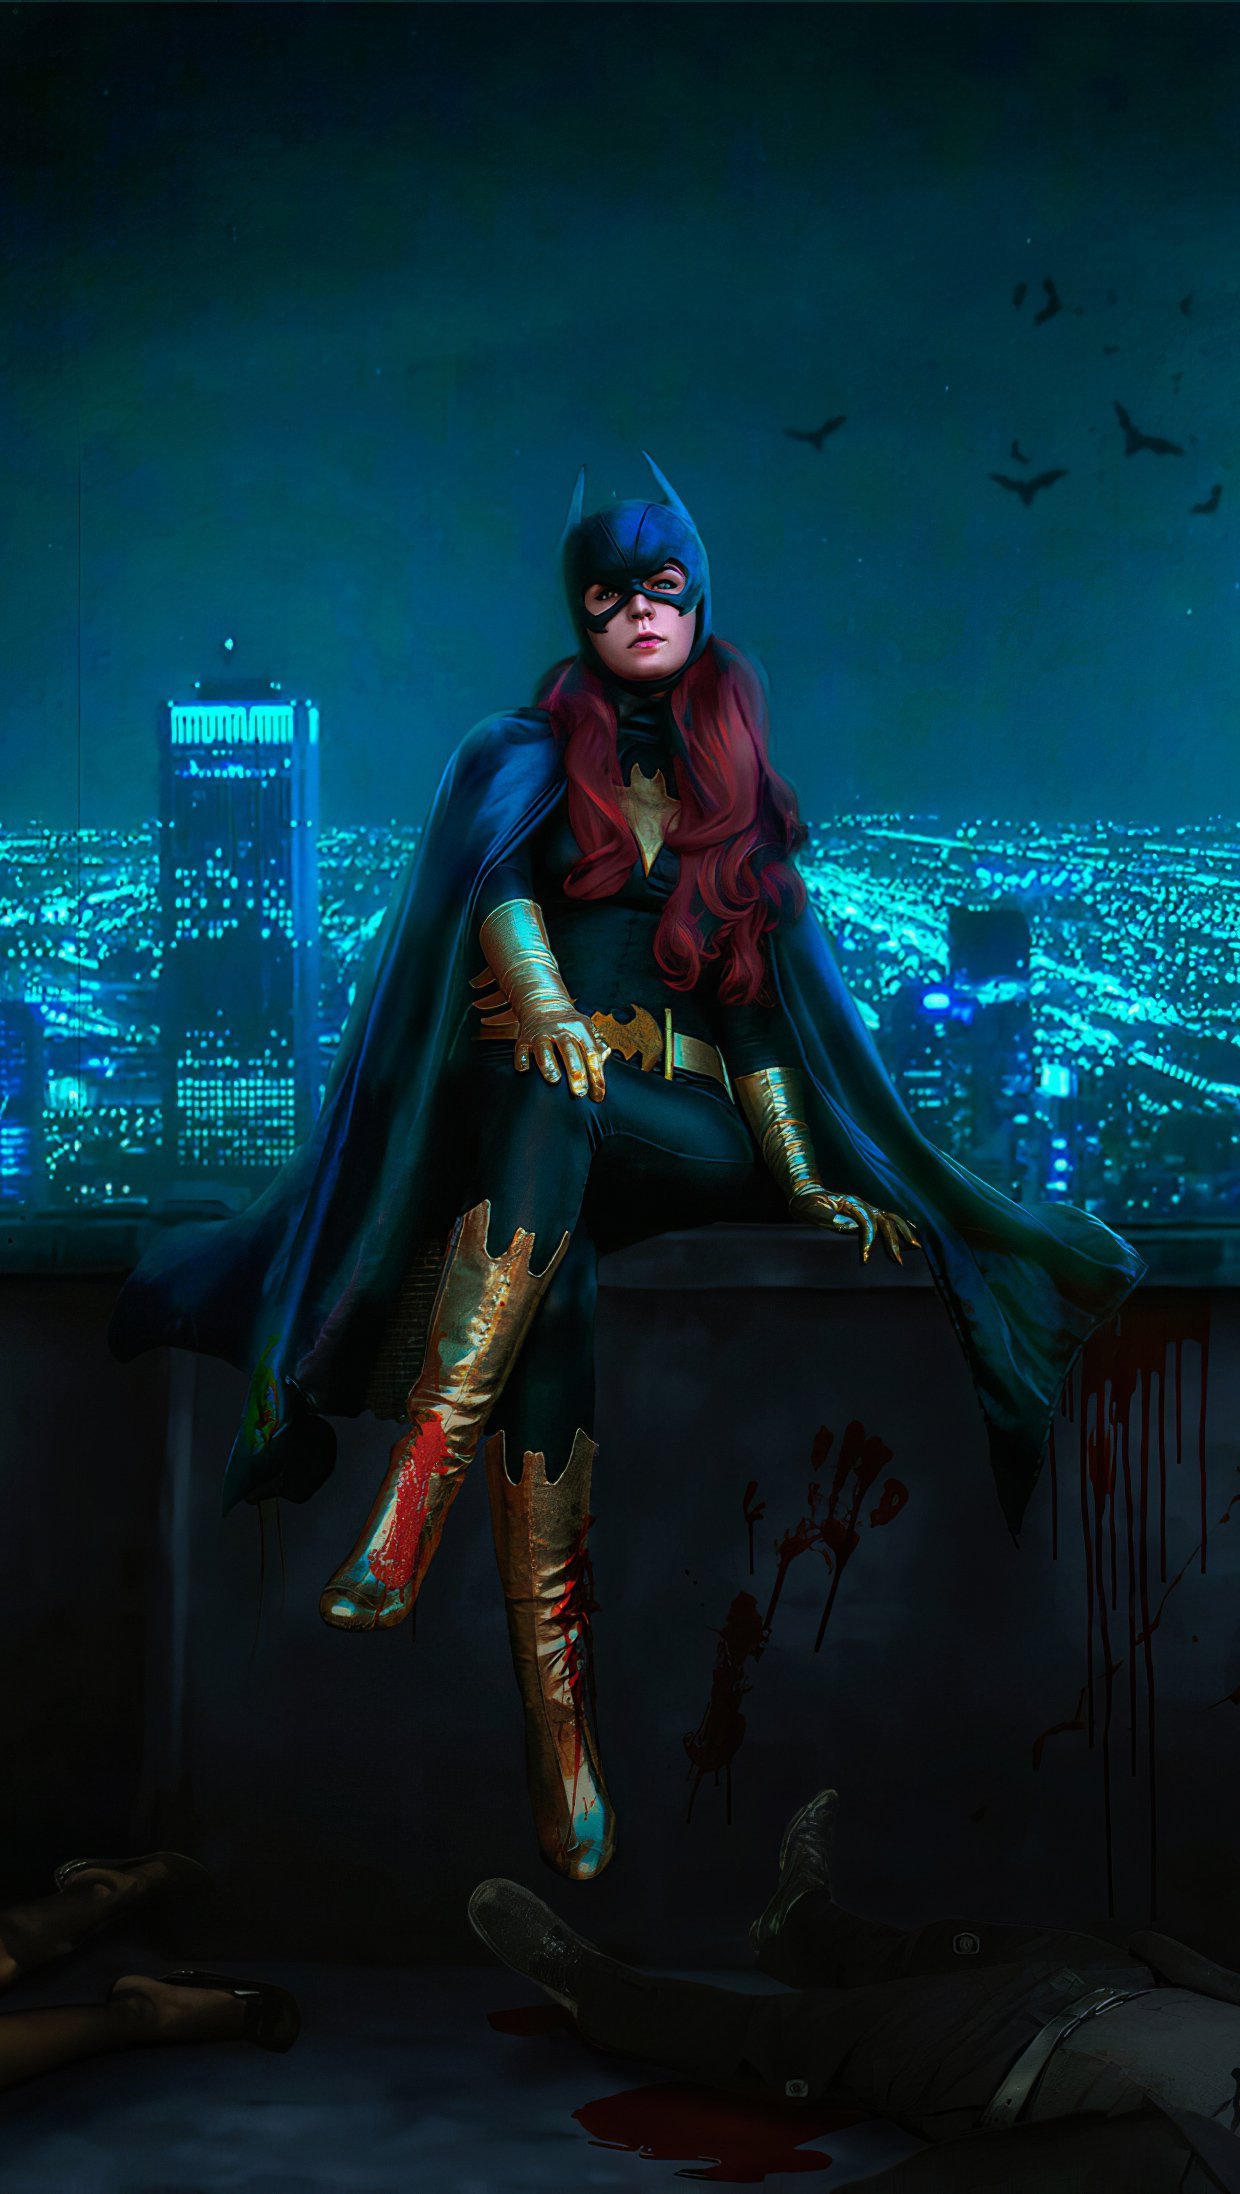 Fondos de pantalla Batwoman en Ciudad Gótica Vertical